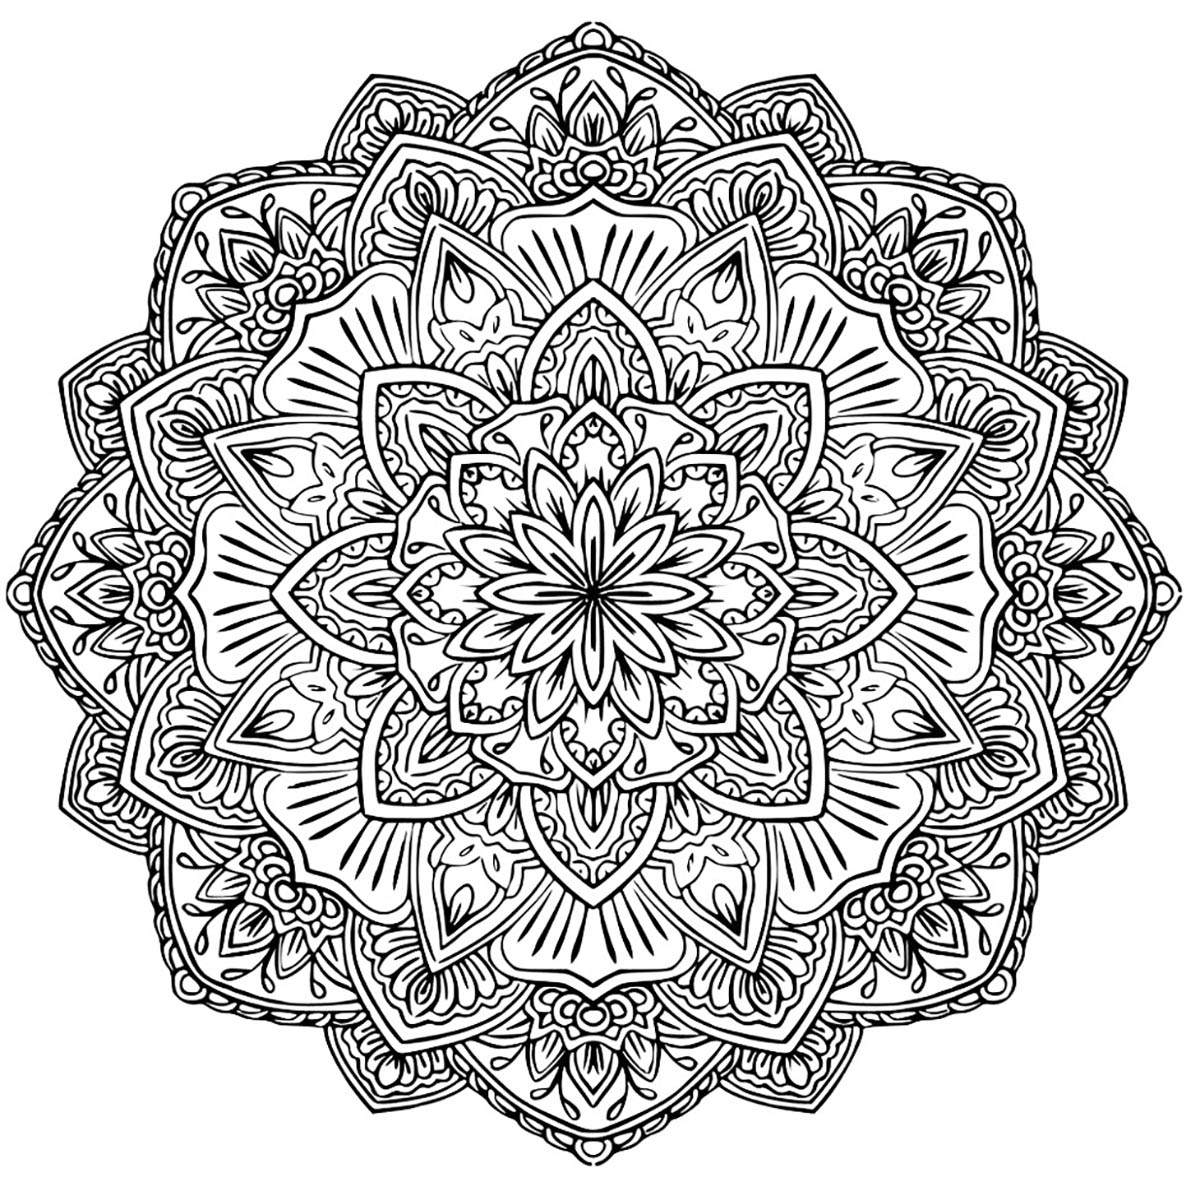 Wenn Sie bereit sind, lange Minuten der Entspannung zu verbringen, bereiten Sie sich darauf vor, dieses recht komplexe 'Blumen'-Mandala auszumalen ... Sie können viele verschiedene Farben verwenden, wenn Sie möchten.